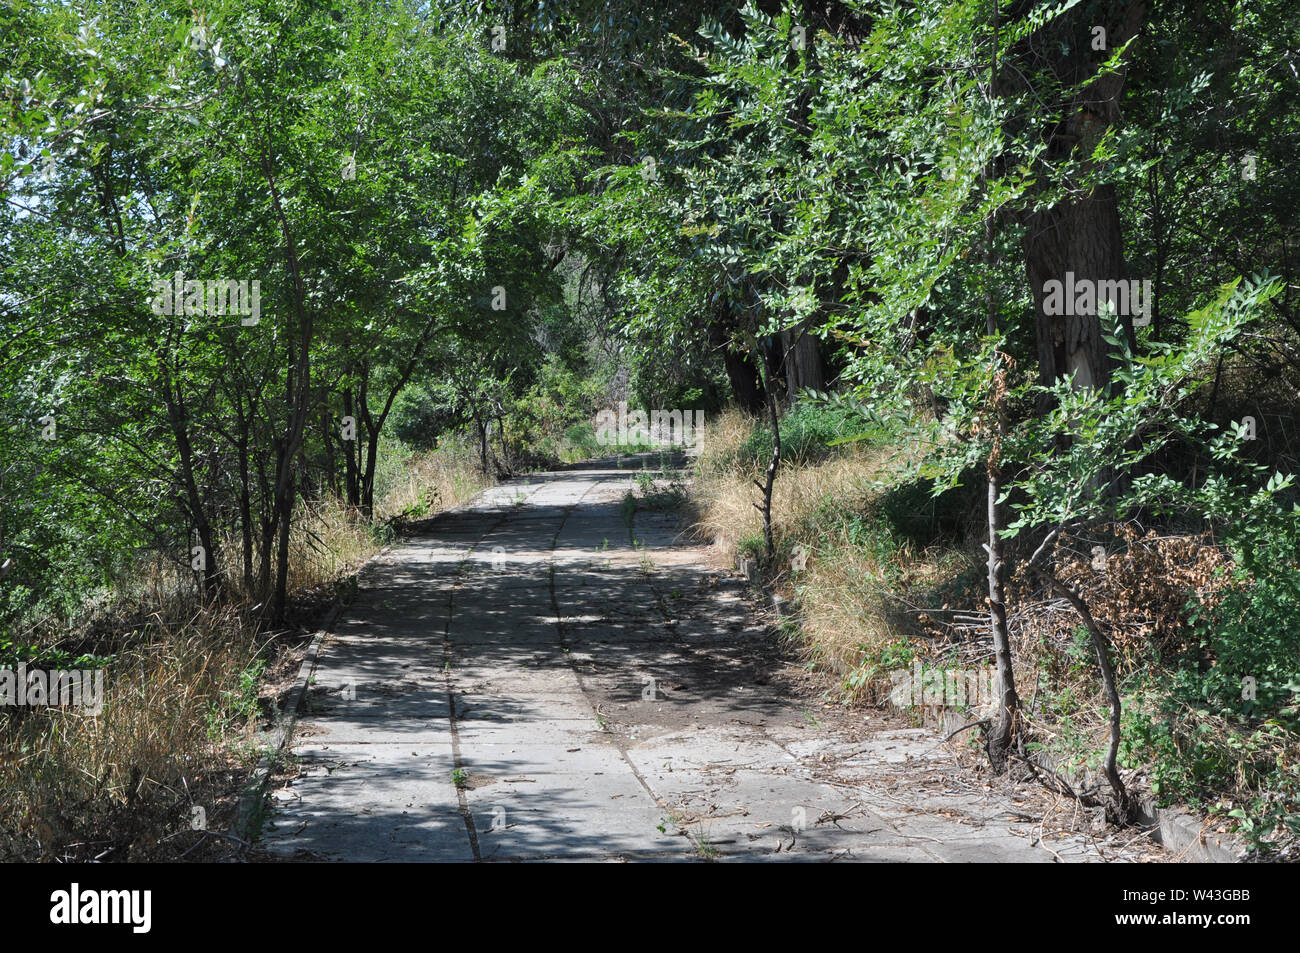 La nature horizontale de fond avec chemin de la voie pavée en béton dans une forêt de feuilles vert soleil Banque D'Images